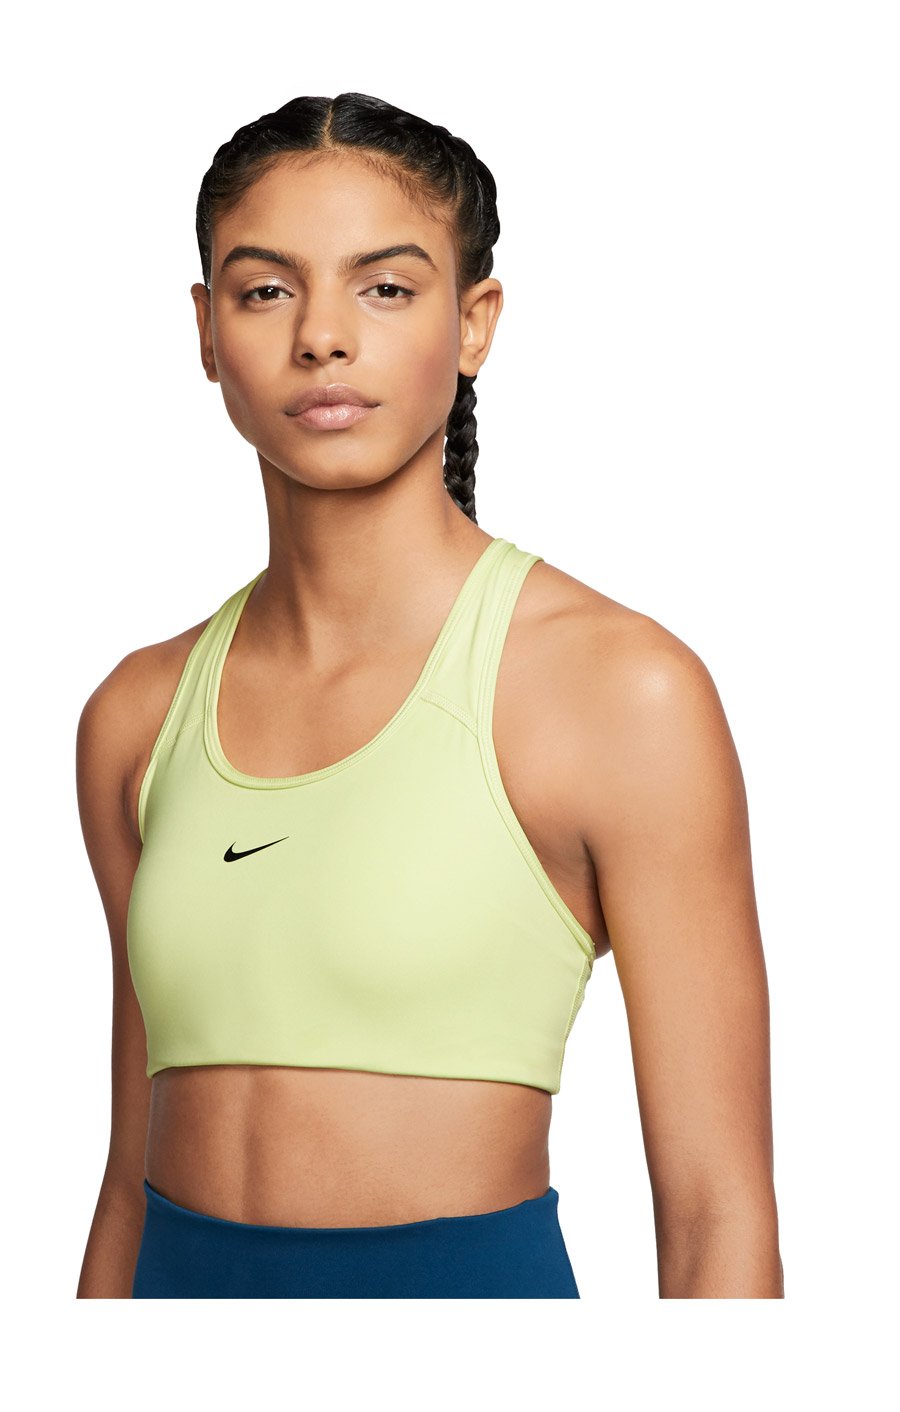 Спортивные бра Nike – поддержка и комфорт для женщин